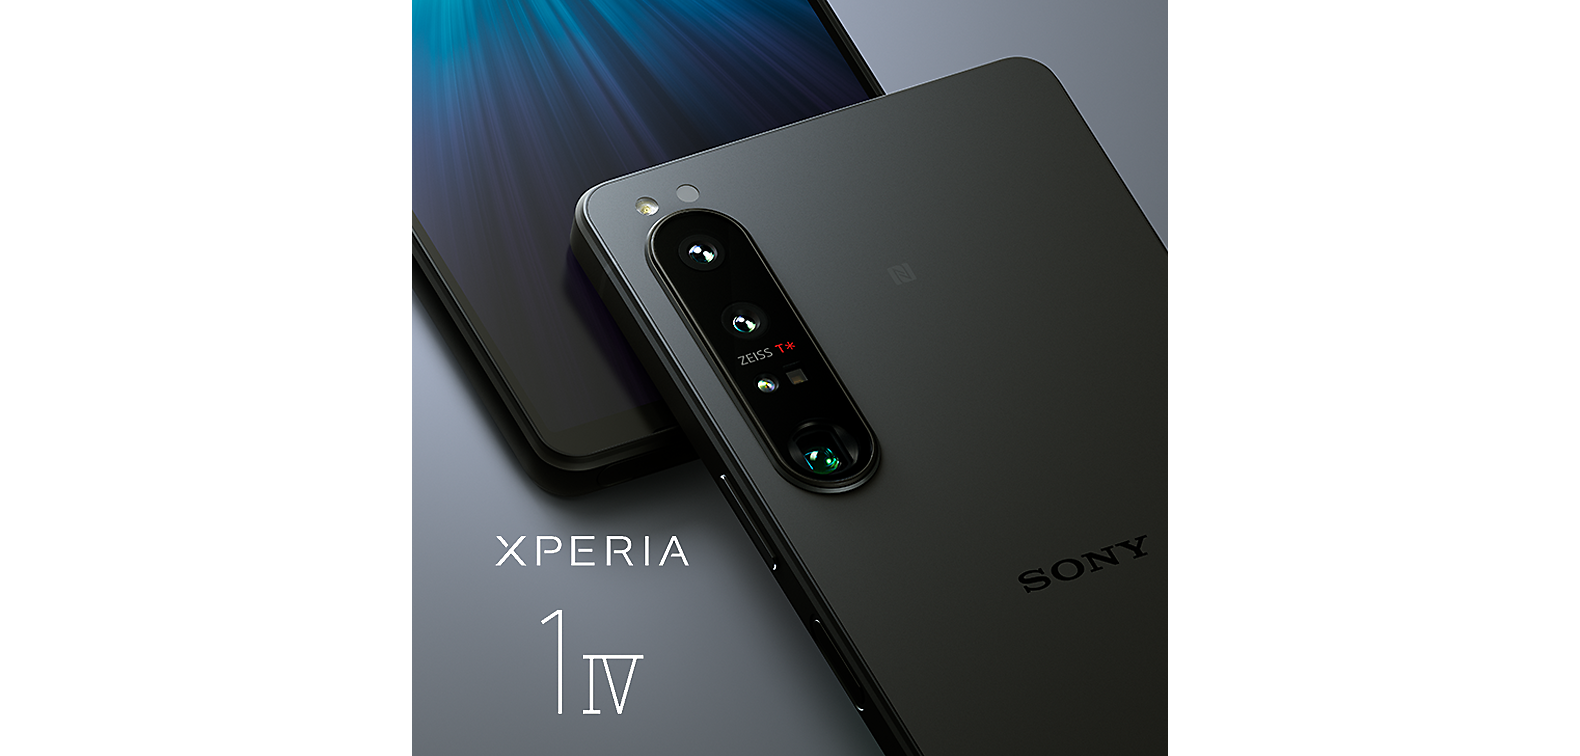 Xperia 1 IV 標誌旁有兩部 Xperia 1 IV 智能手機，背景是灰色。